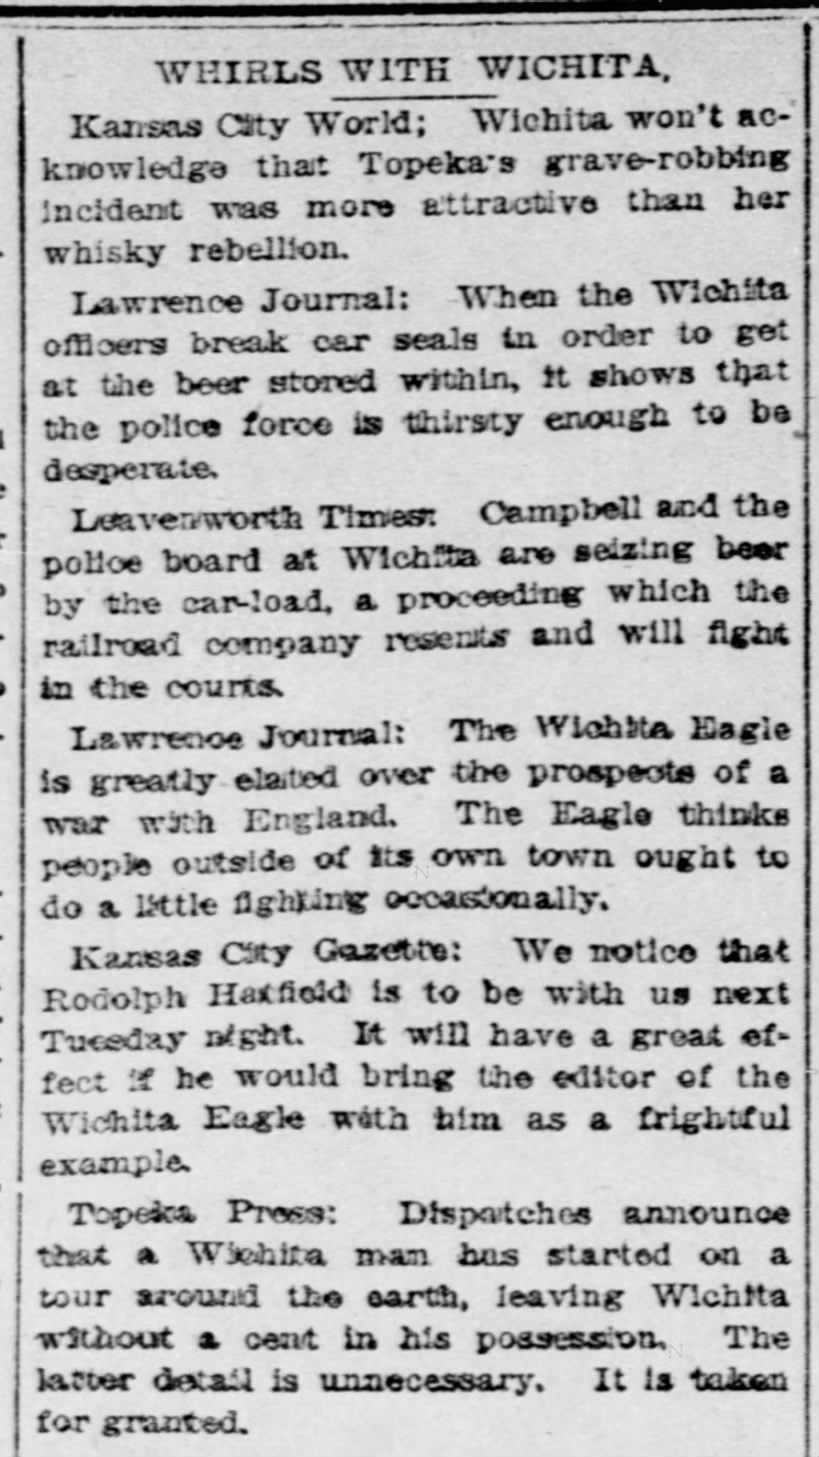 Rodolph Hatfield Whirls with Wichita column Wichita Eagle 22 Dec 1895